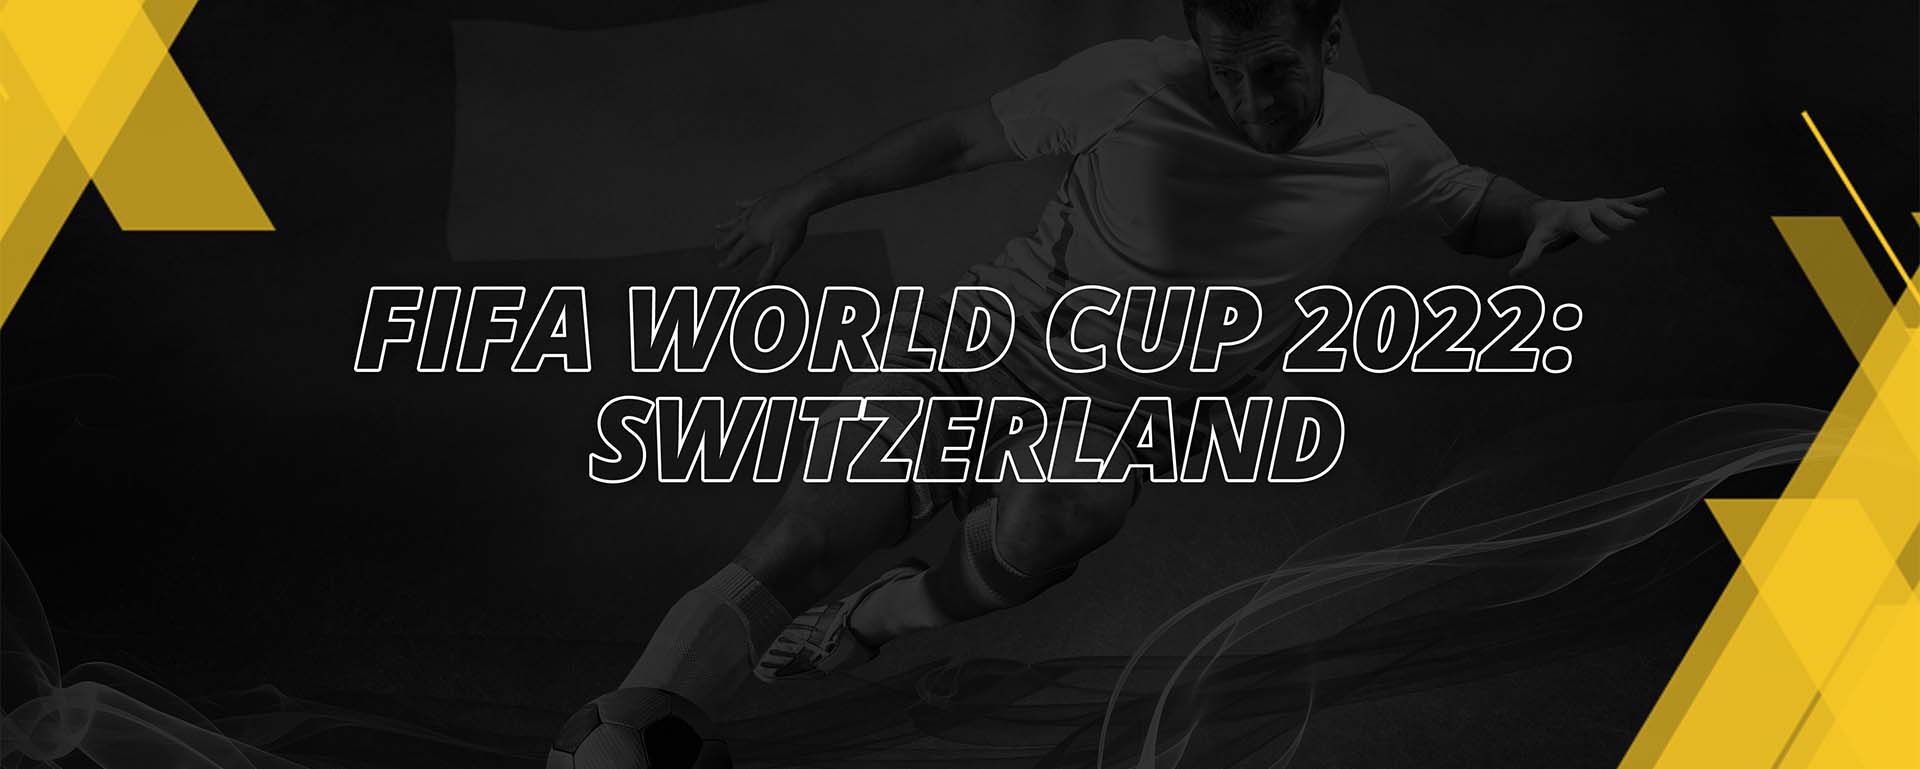 SWITZERLAND – FIFA WORLD CUP QATAR 2022 – FAN’S COMPENDIUM